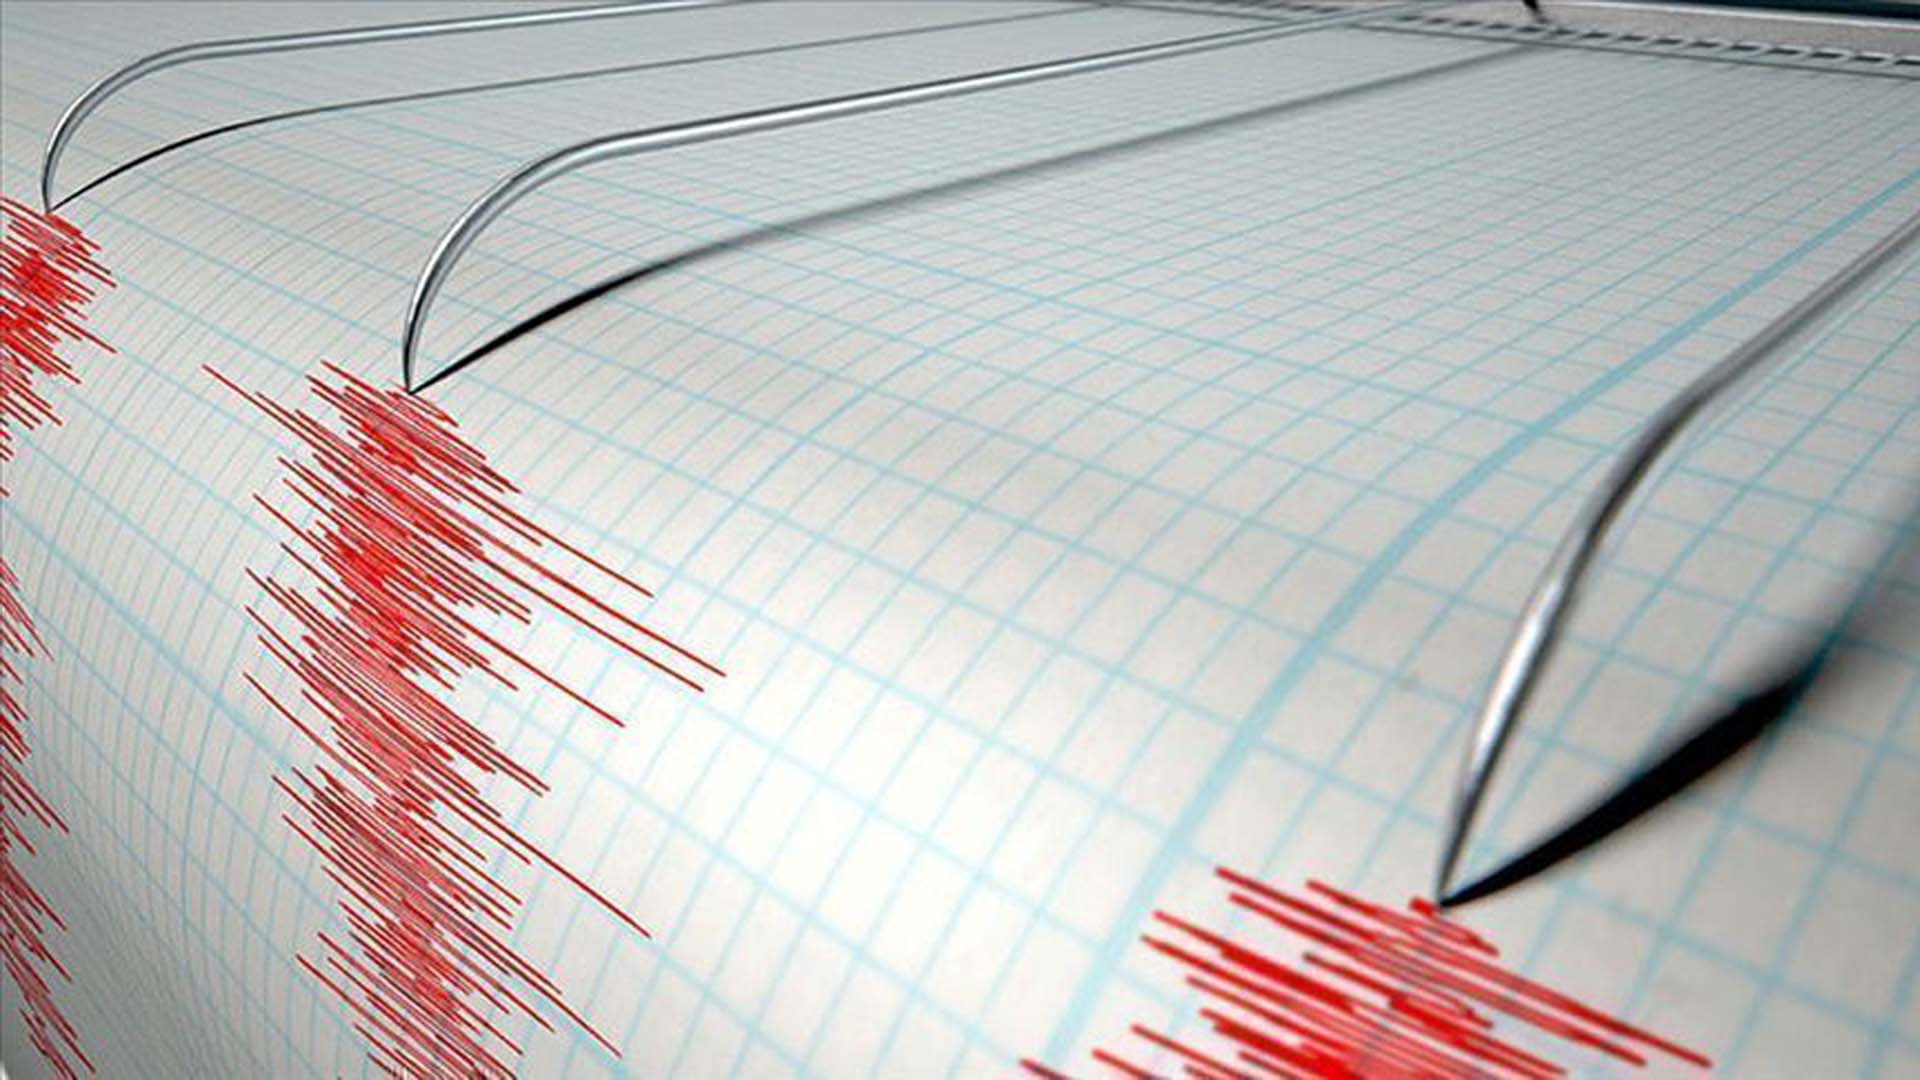 Son dakika | AFAD duyurdu: Van'ın Muradiye ilçesinde 4.0 büyüklüğünde deprem